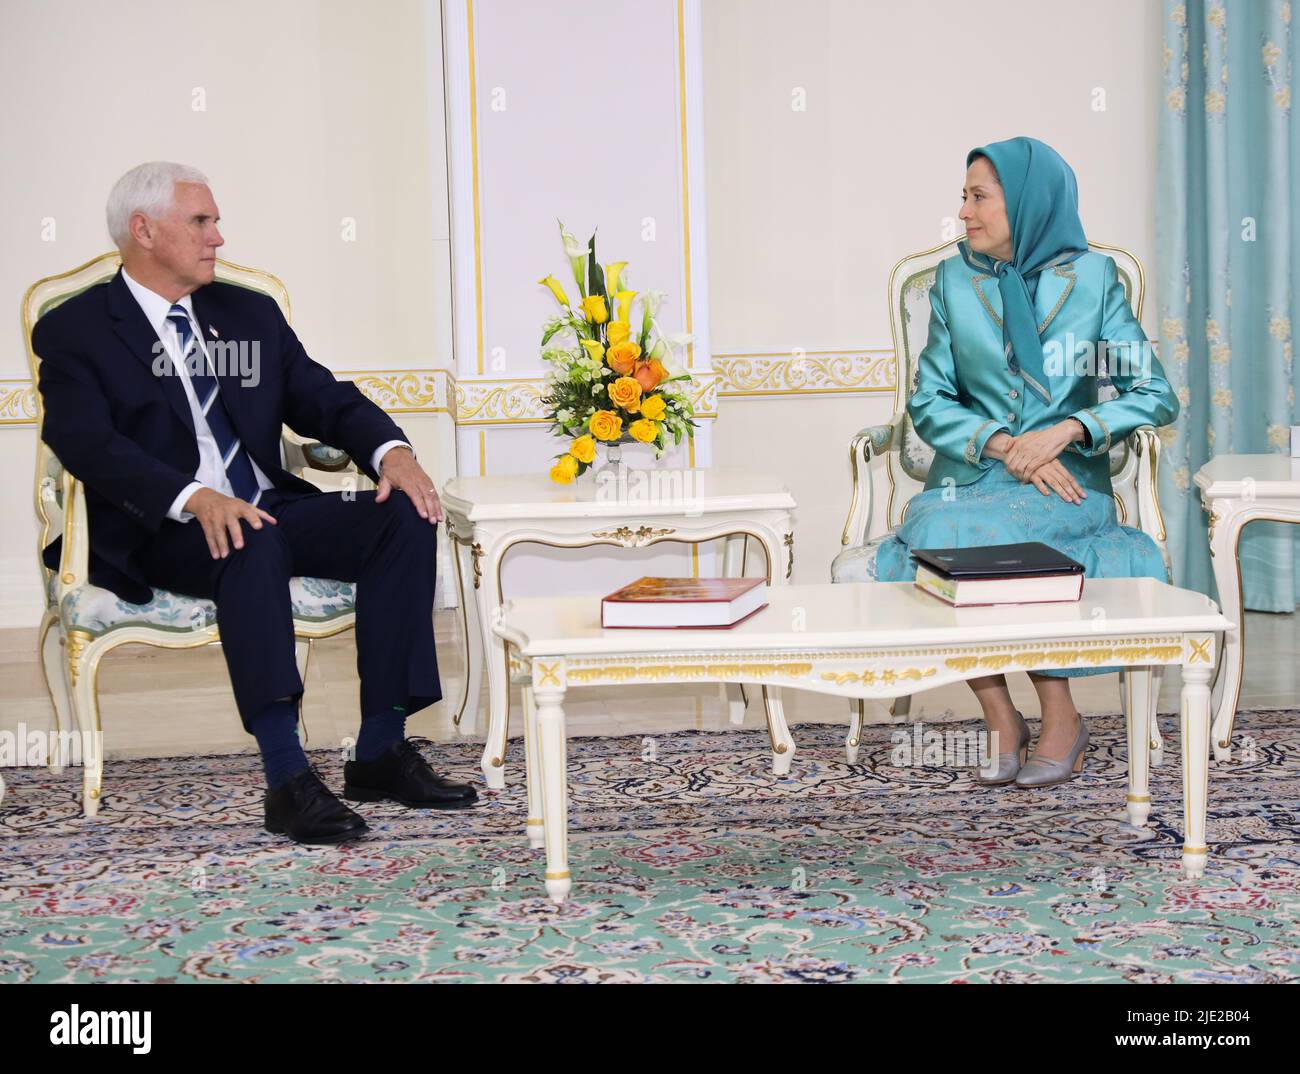 Le président élu du Conseil national de la résistance de l'Iran (NCRI) Maryam Rajavi rencontre Mike Pence, le vice-président américain de 48th. Des points de vue ont été échangés sur les conditions objectives de la société iranienne, l'alternative NCRI et l'approche de la communauté internationale face au fascisme religieux au pouvoir de l'Iran. Banque D'Images